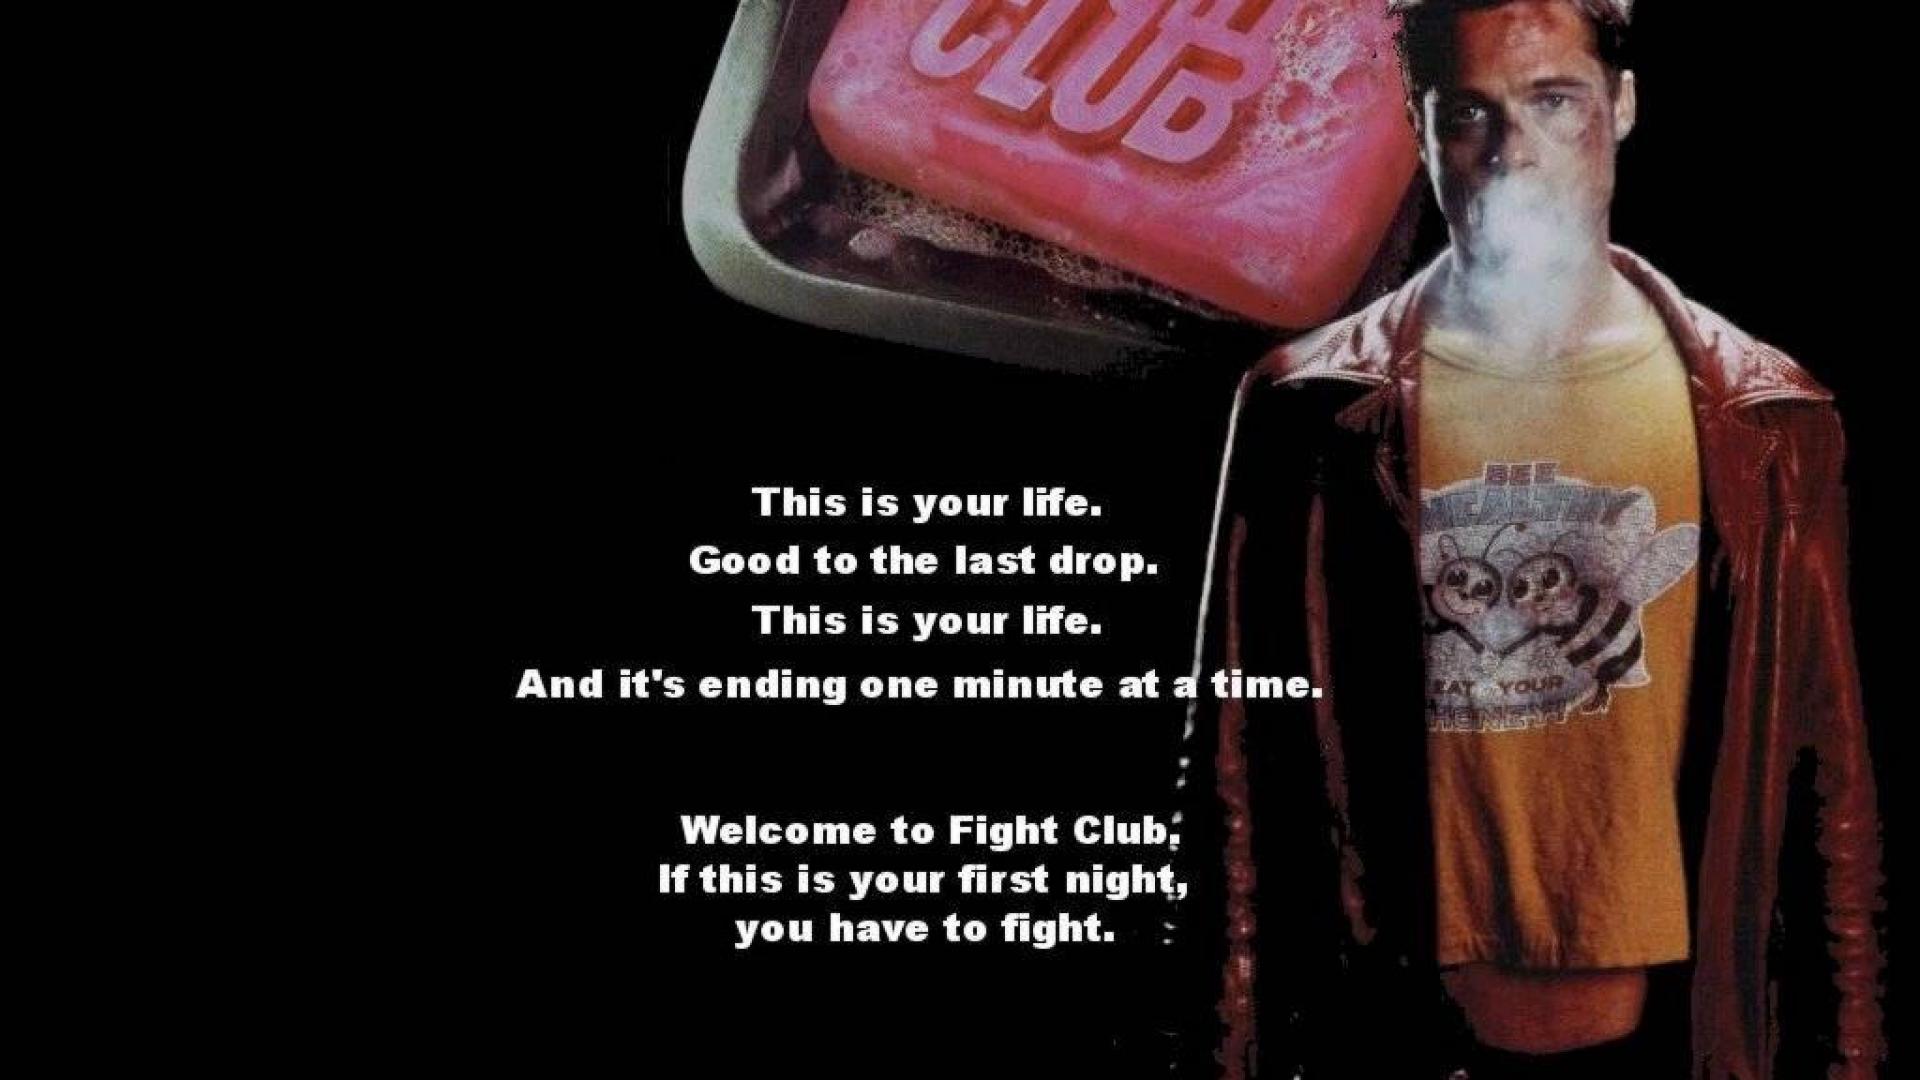 Fight Club Movie Hd Image - Fight Club Wallpaper 4k - 1920x1080 Wallpaper -  